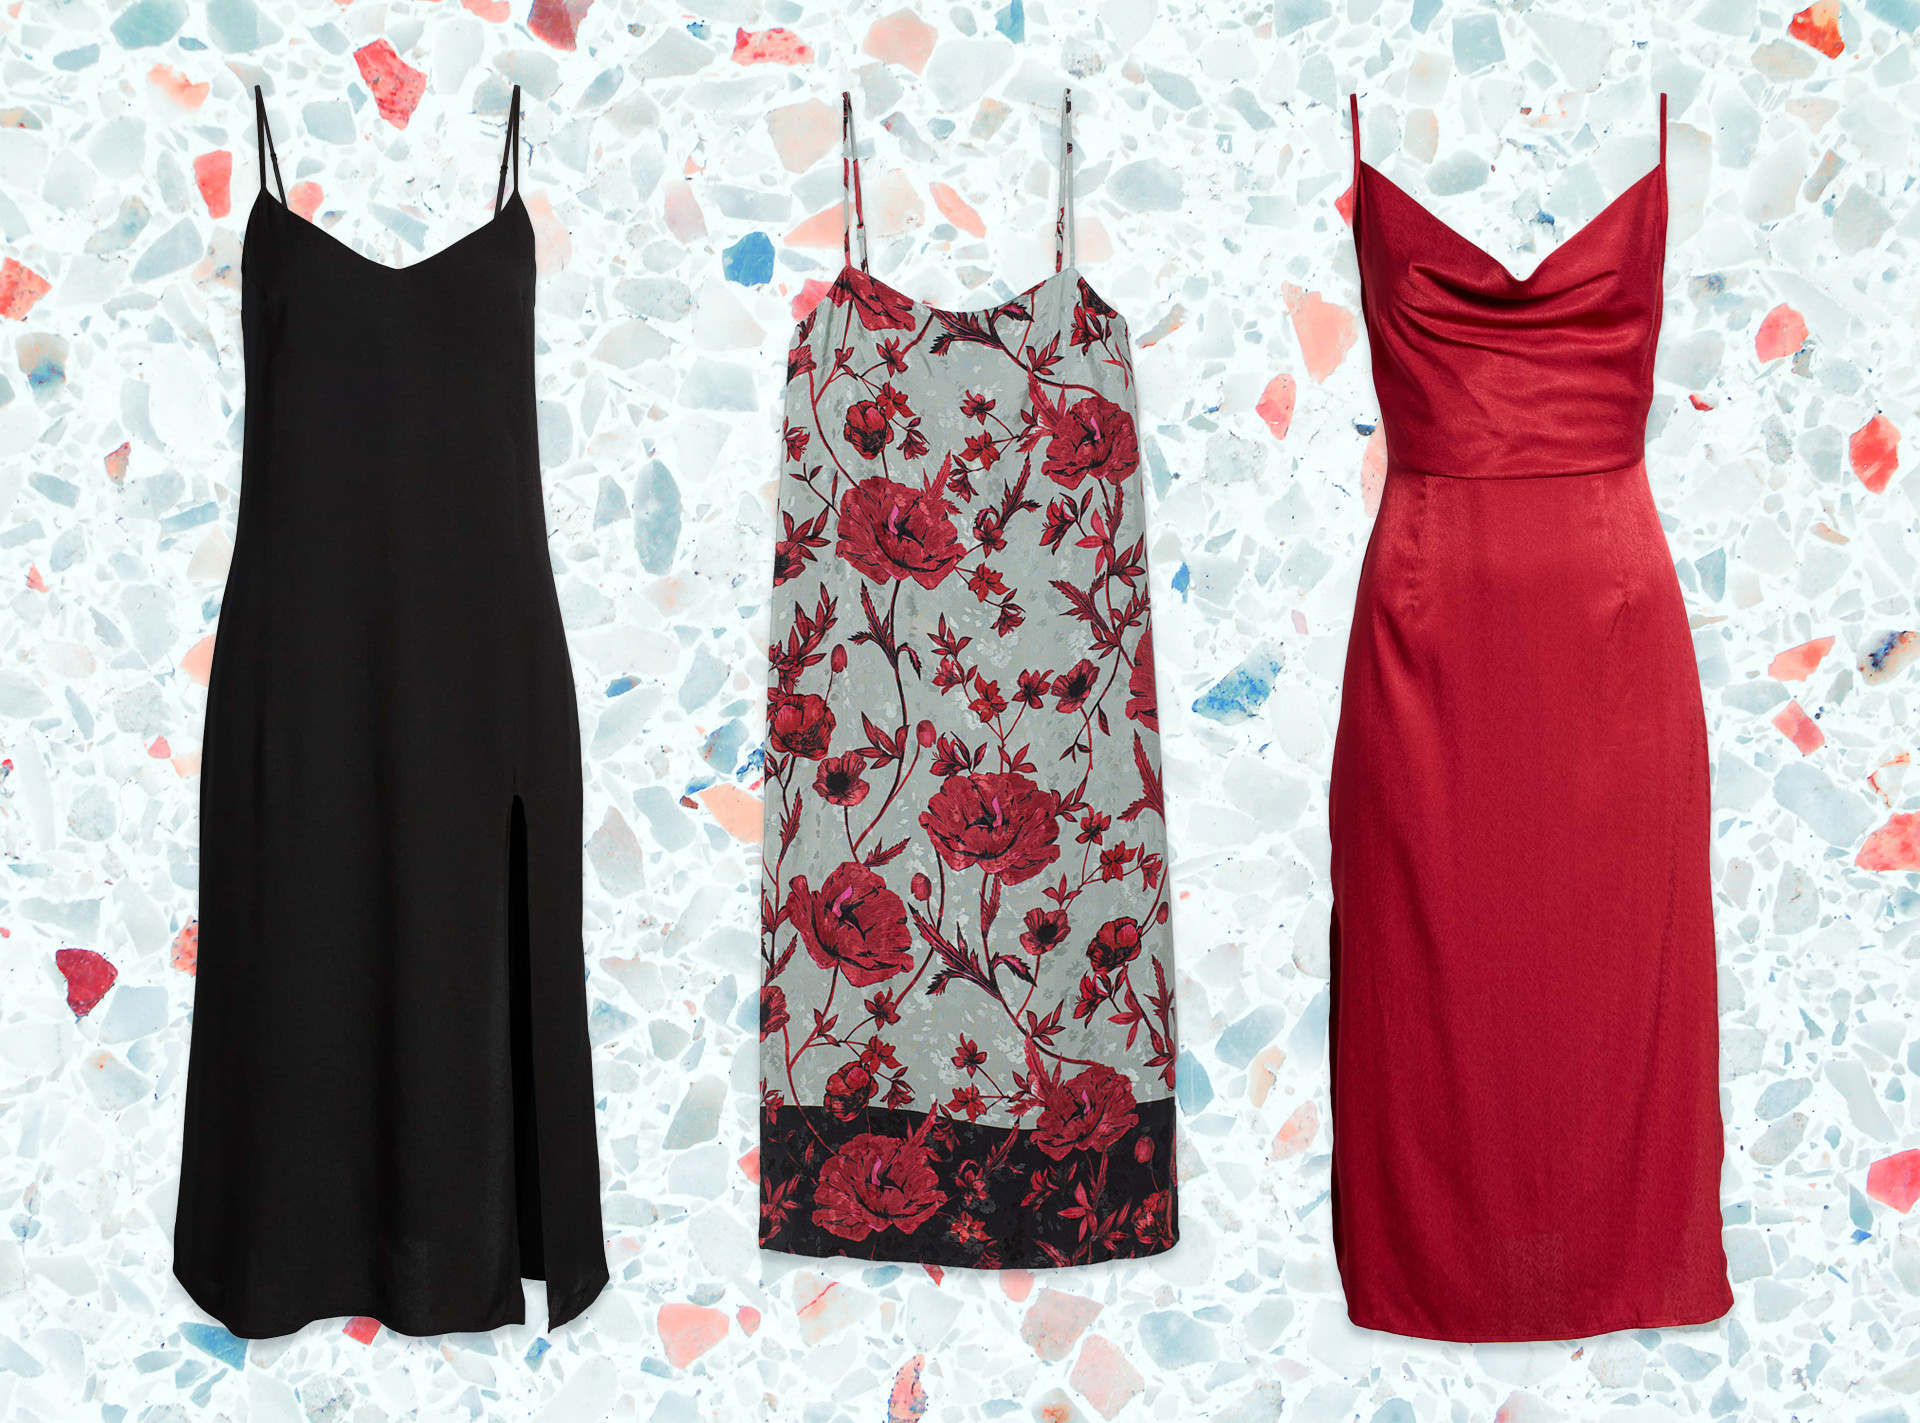 jas Collega Emuleren Shop the Winter Slip Dress Trend - E! Online